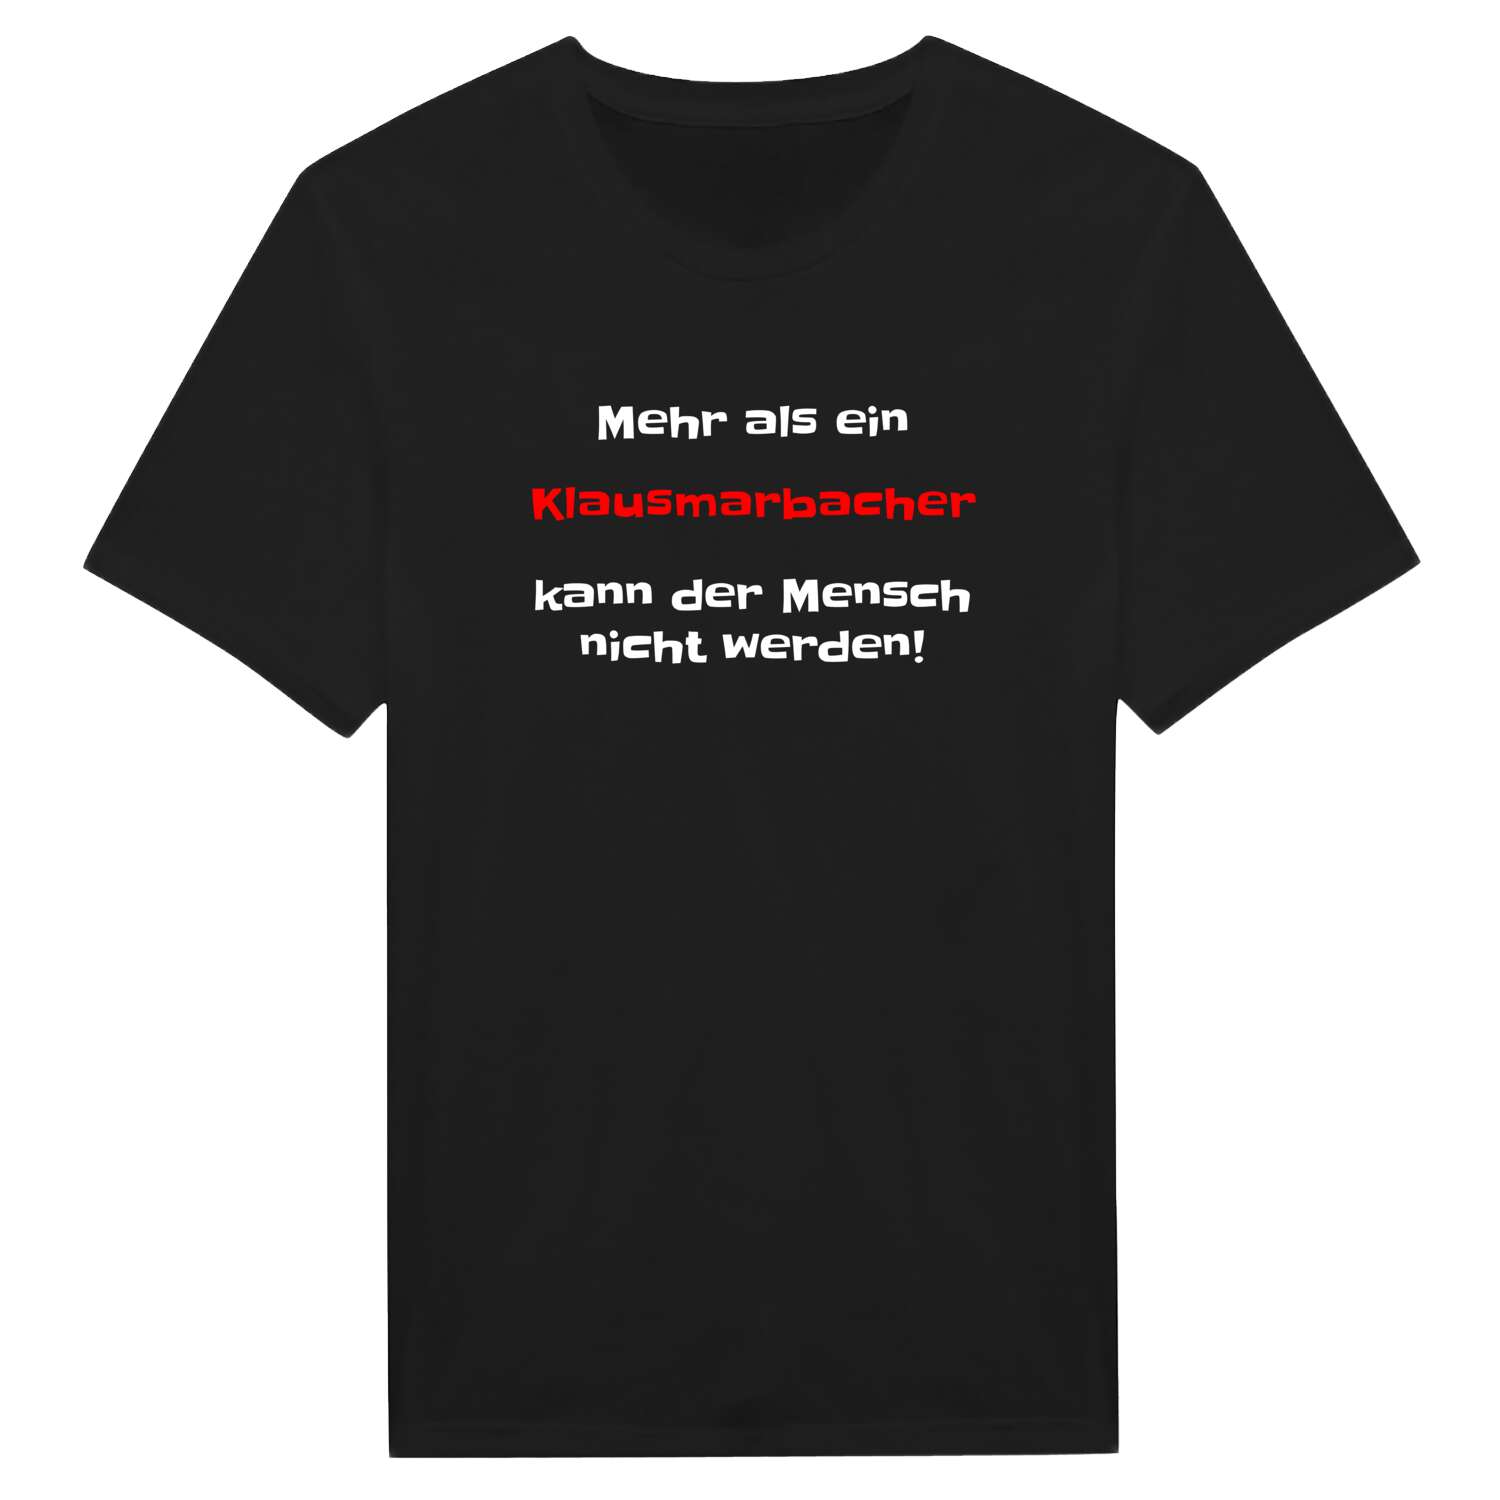 Klausmarbach T-Shirt »Mehr als ein«